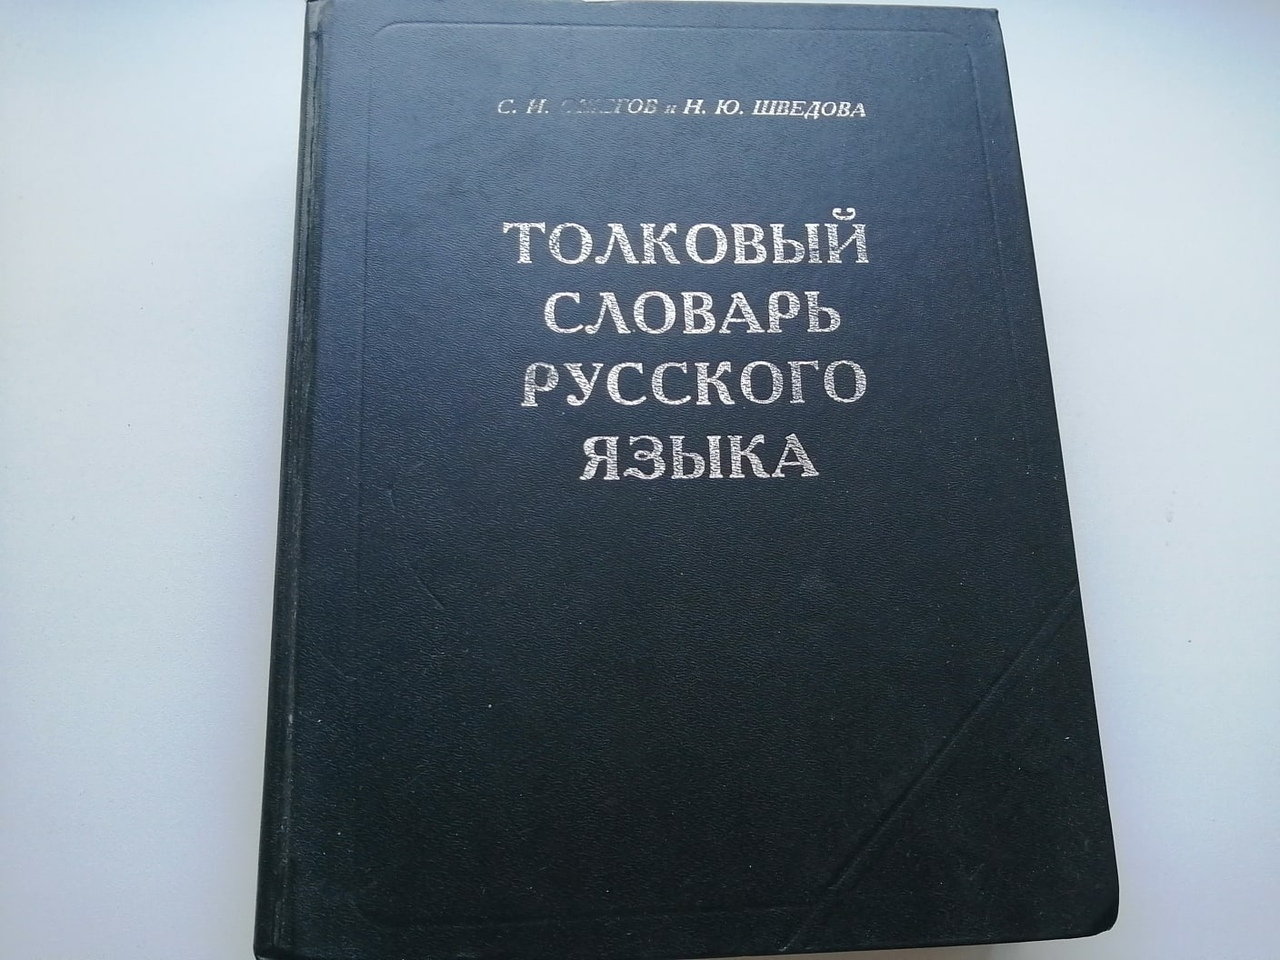 Фото словарей русского языка